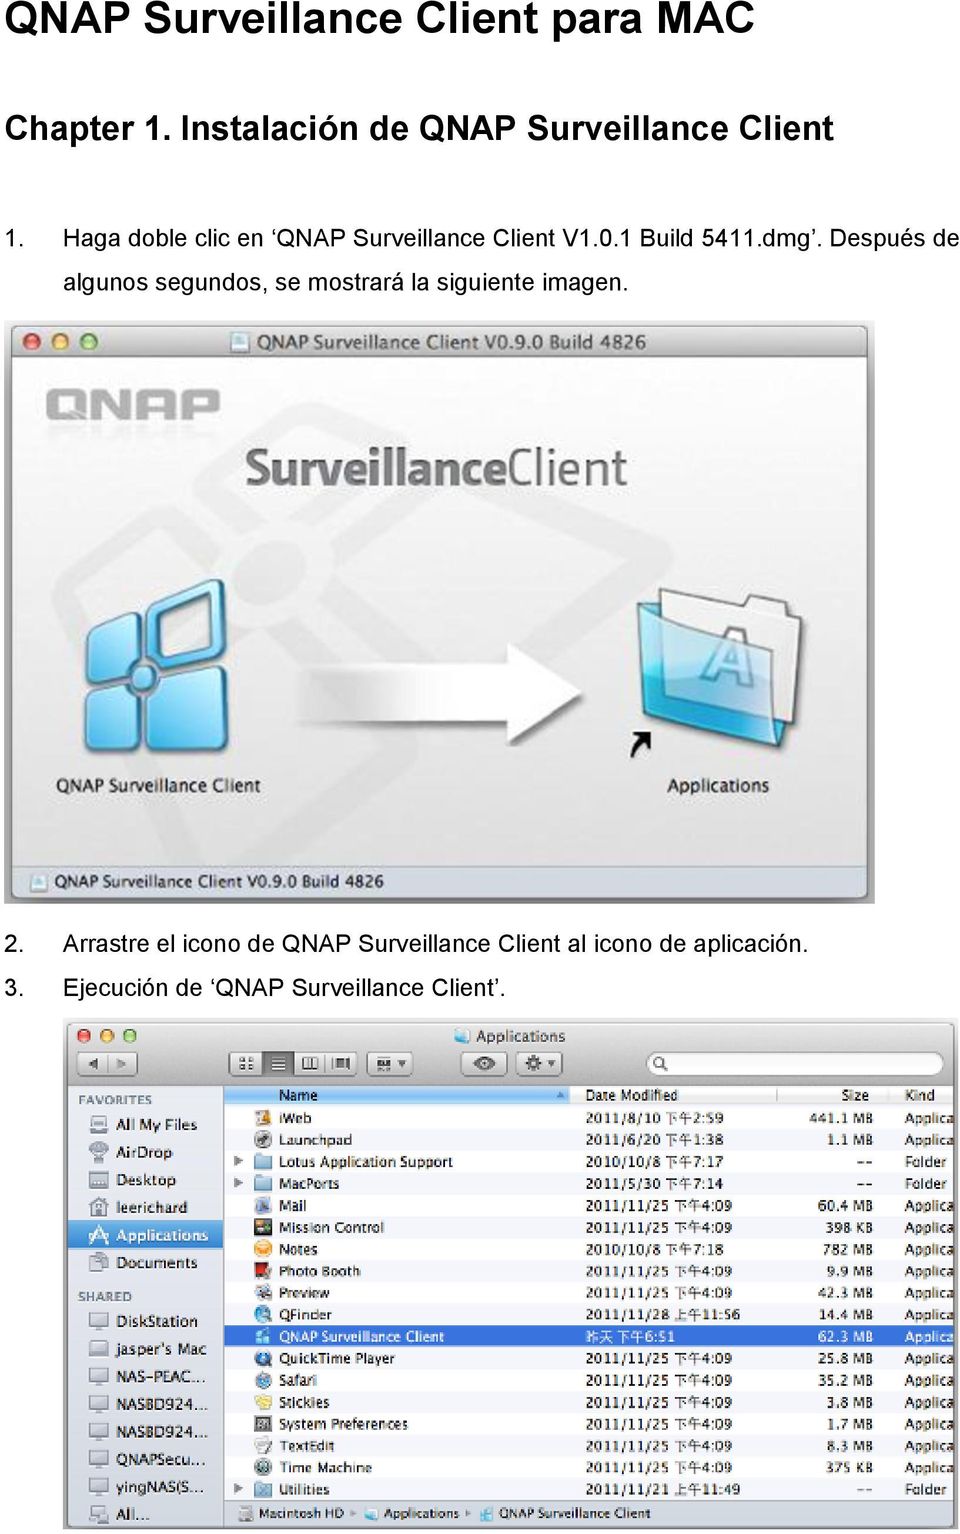 Haga doble clic en QNAP Surveillance Client V1.0.1 Build 5411.dmg.